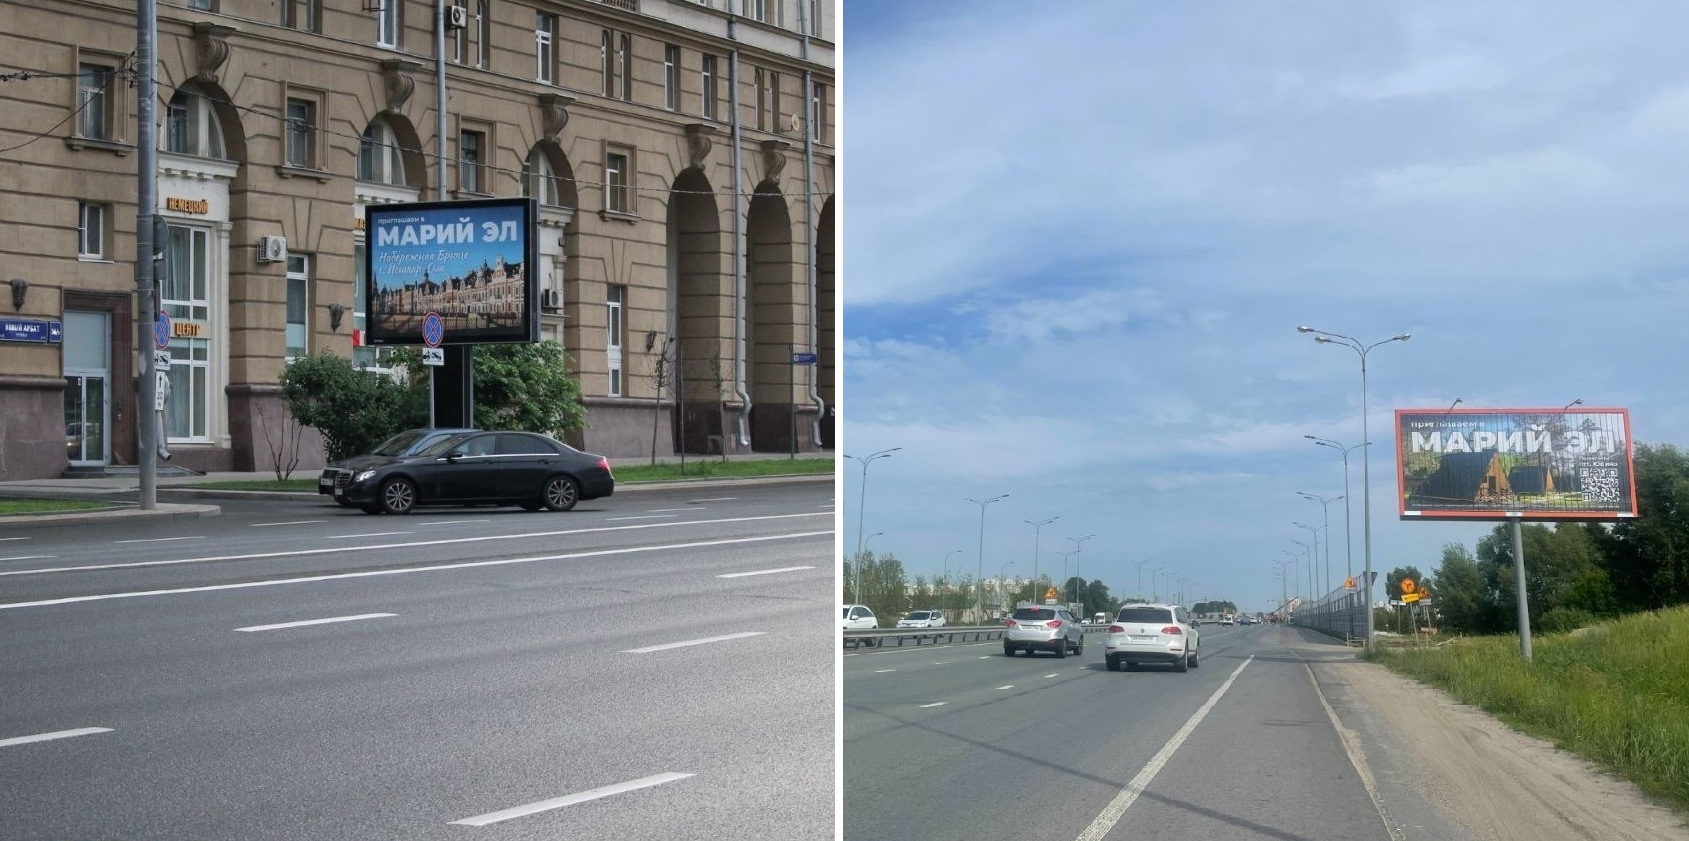 В Москве и Казани появились рекламные щиты, приглашающие в Марий Эл